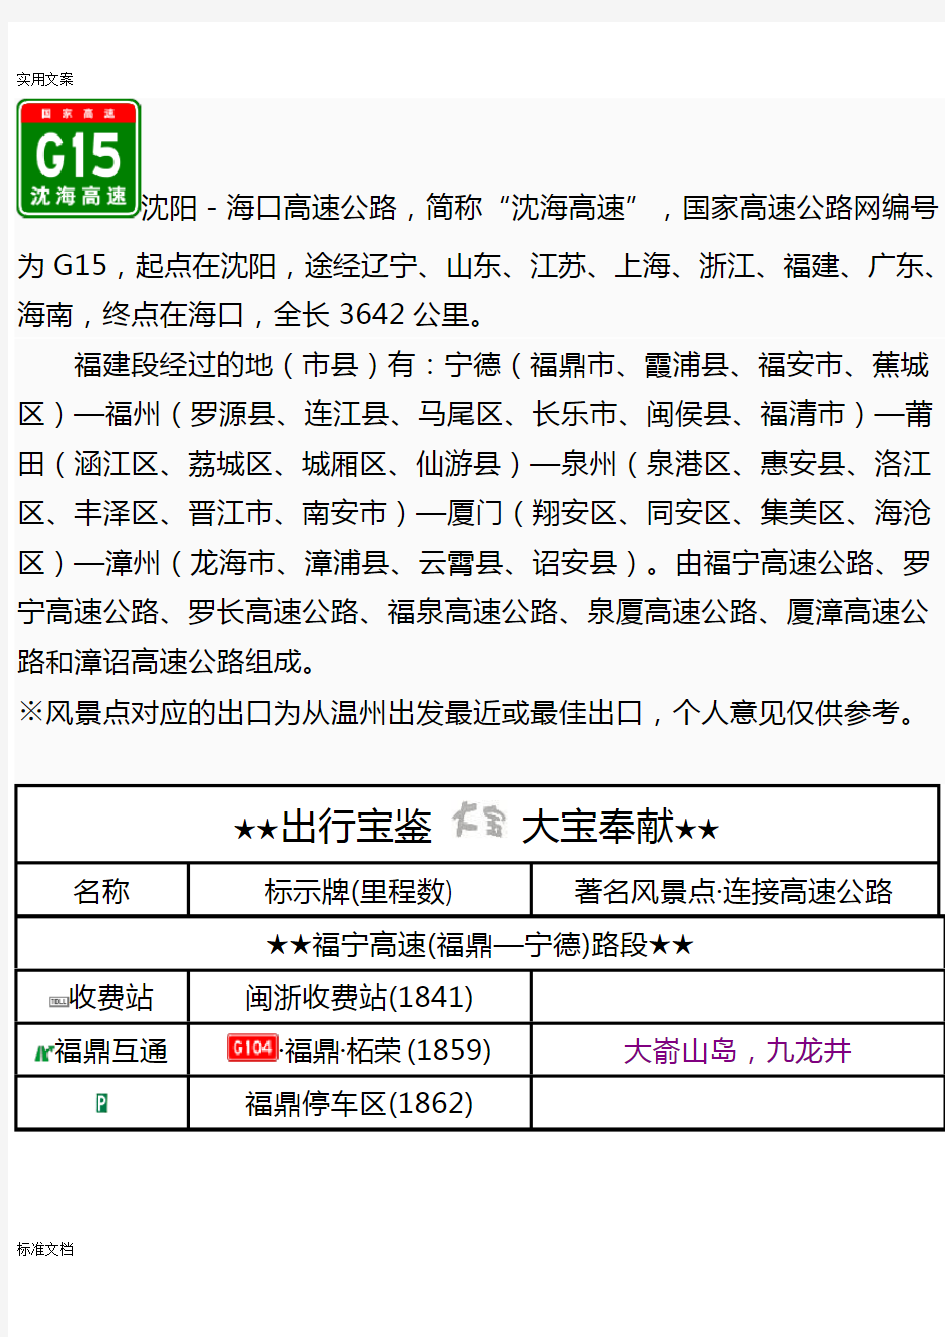 G15沈海高速(福建段)出入口、服务区、里程数及风景区